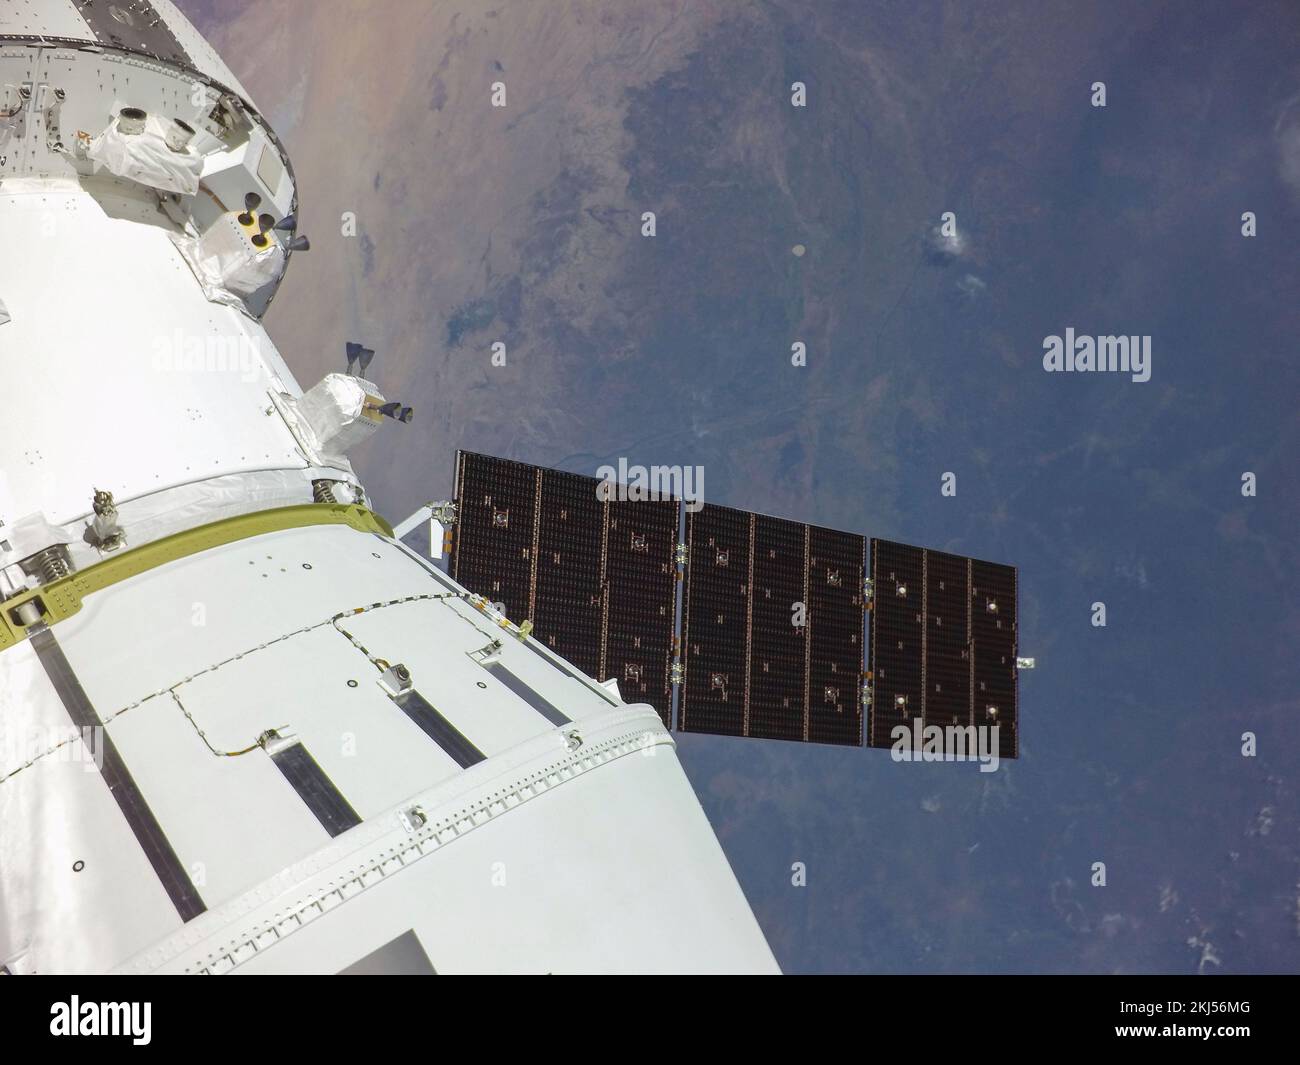 Órbita de la Tierra, órbita de la Tierra. 16 de noviembre de 2022. Selfie de la cápsula de la tripulación de Orión con la Tierra después de desplegar uno de los paneles solares poco después del lanzamiento en el primer día de vuelo de la misión Artemis I de la NASA, el 16 de noviembre de 2022, en órbita terrestre. La imagen fue captada por una cámara en la punta de uno de los paneles solares mientras salía de la atmósfera de la Tierra. Crédito: NASA/NASA/Alamy Live News Foto de stock